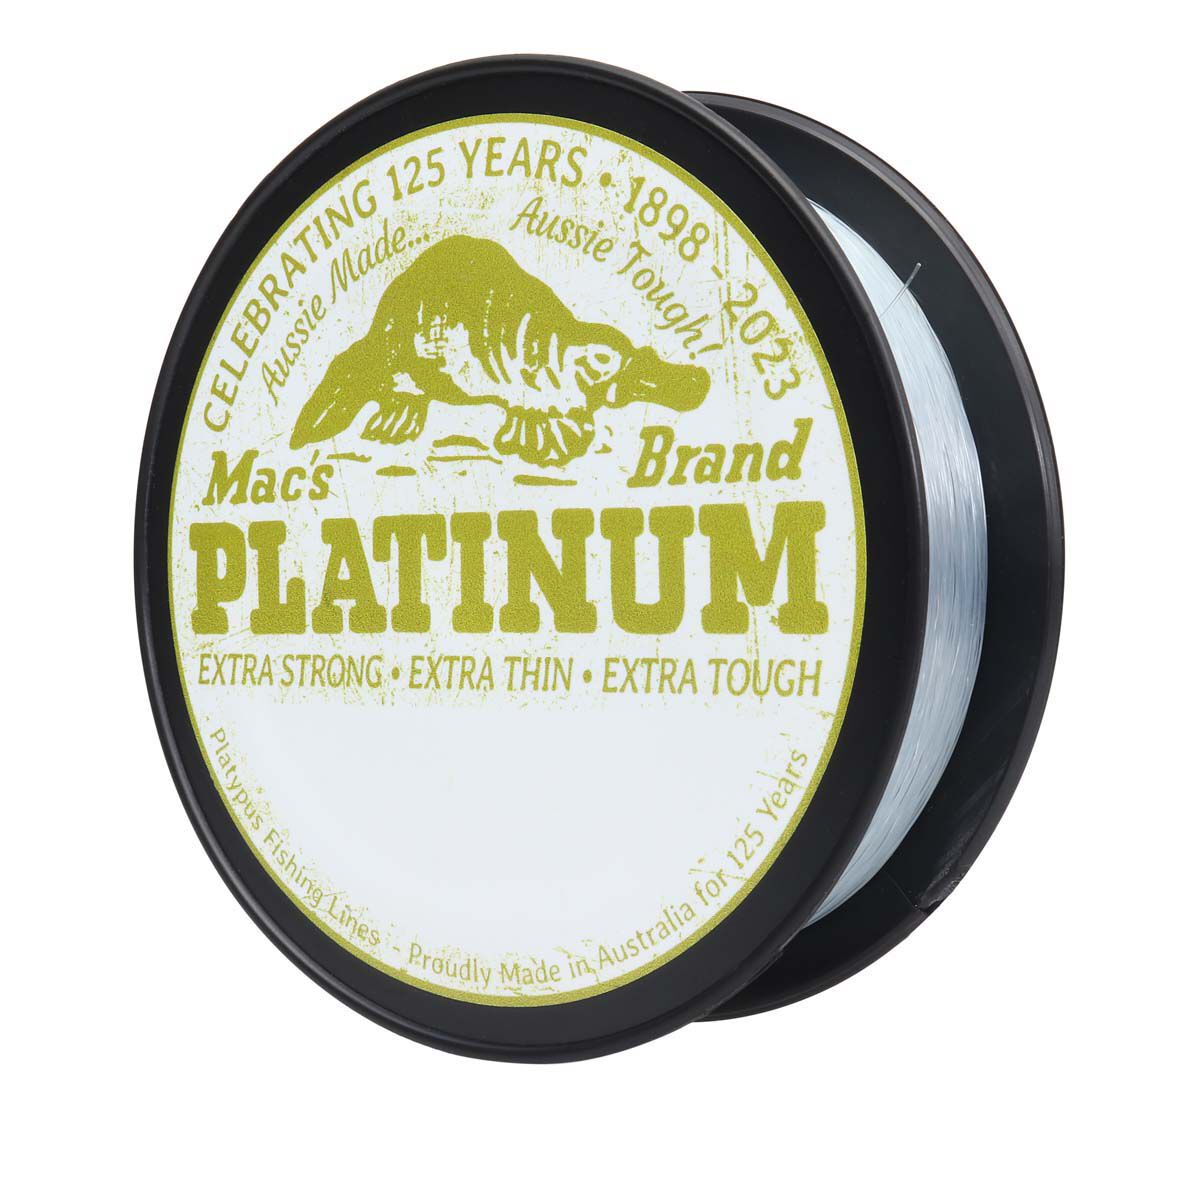 Platypus Platinum Mono Line 300m 50lb